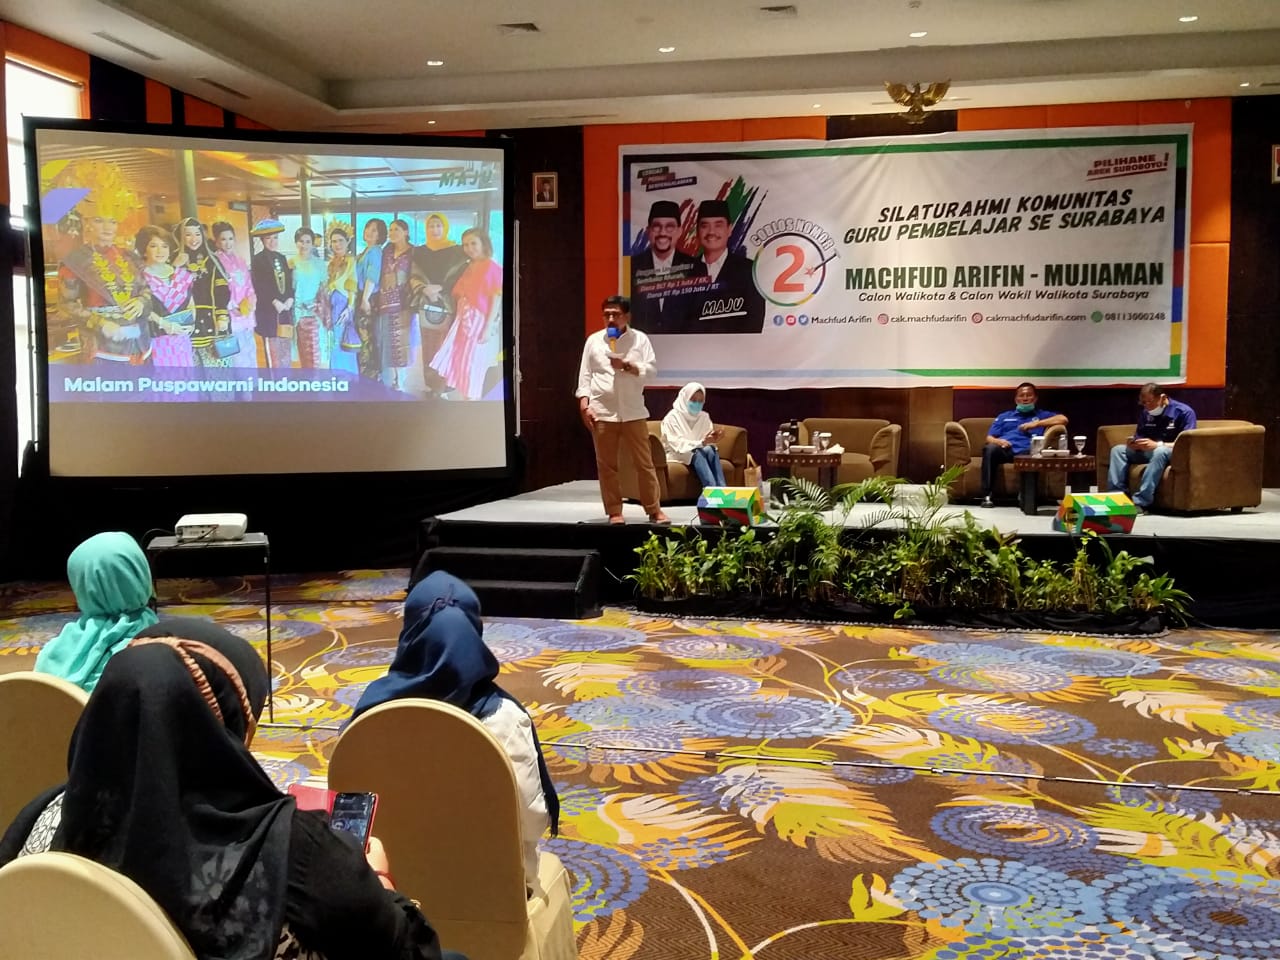 Cawali Surabaya, Machfud Arifin menyampaikan programnya terkait dunia pendidikan kepada para pembelajar se-Surabaya di Hotel Mercure, Surabaya, Jumat 9 Oktober 2020. (Foto: Fariz Yarbo/Ngopibareng.id)